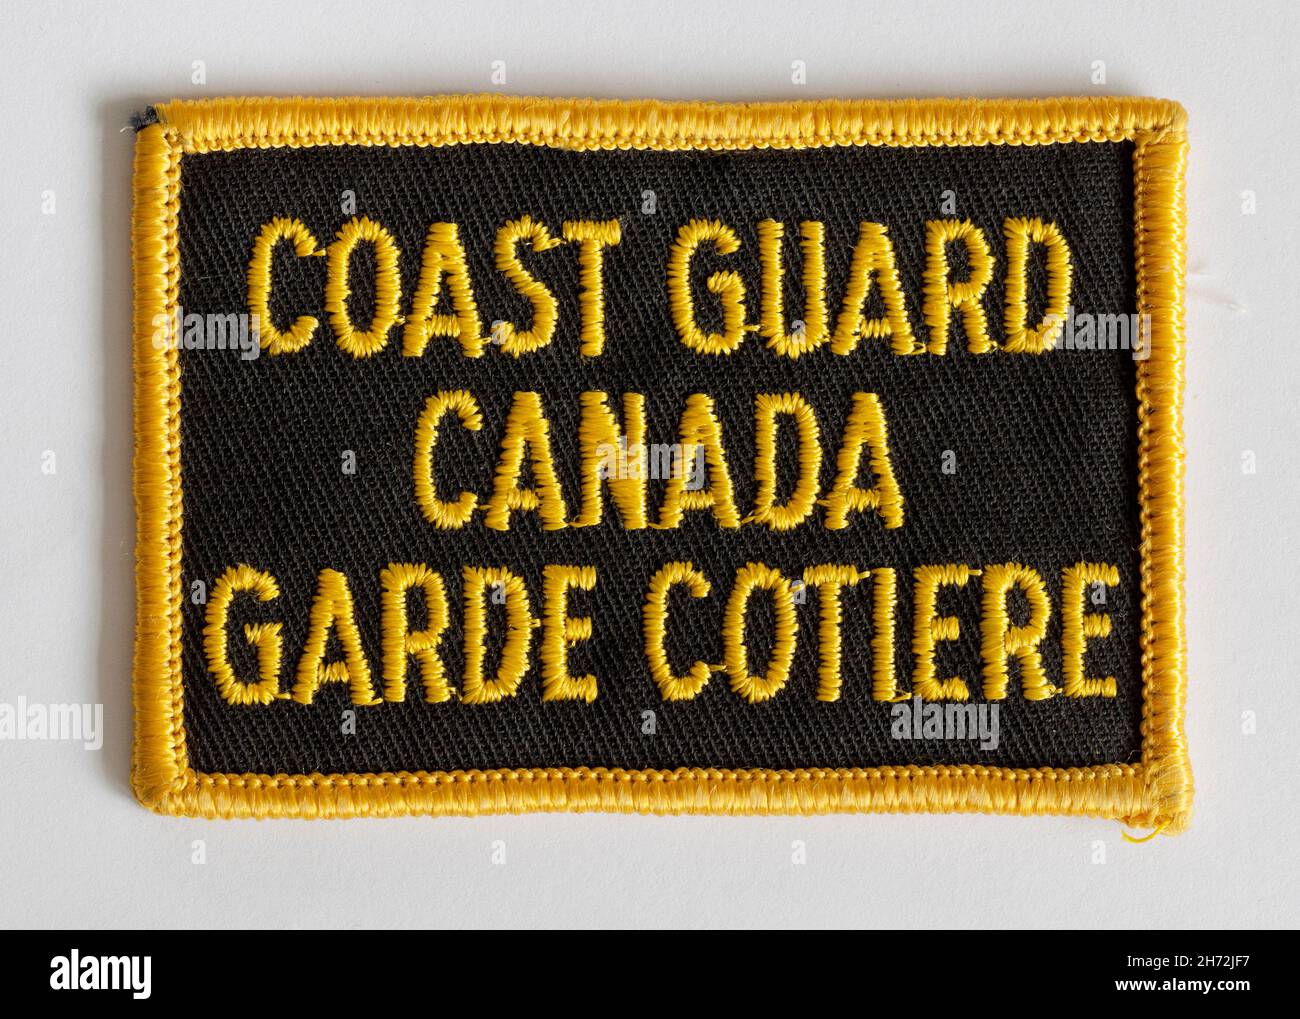 Insignia de parche uniforme para guardacostas canadienses vintage Foto de stock